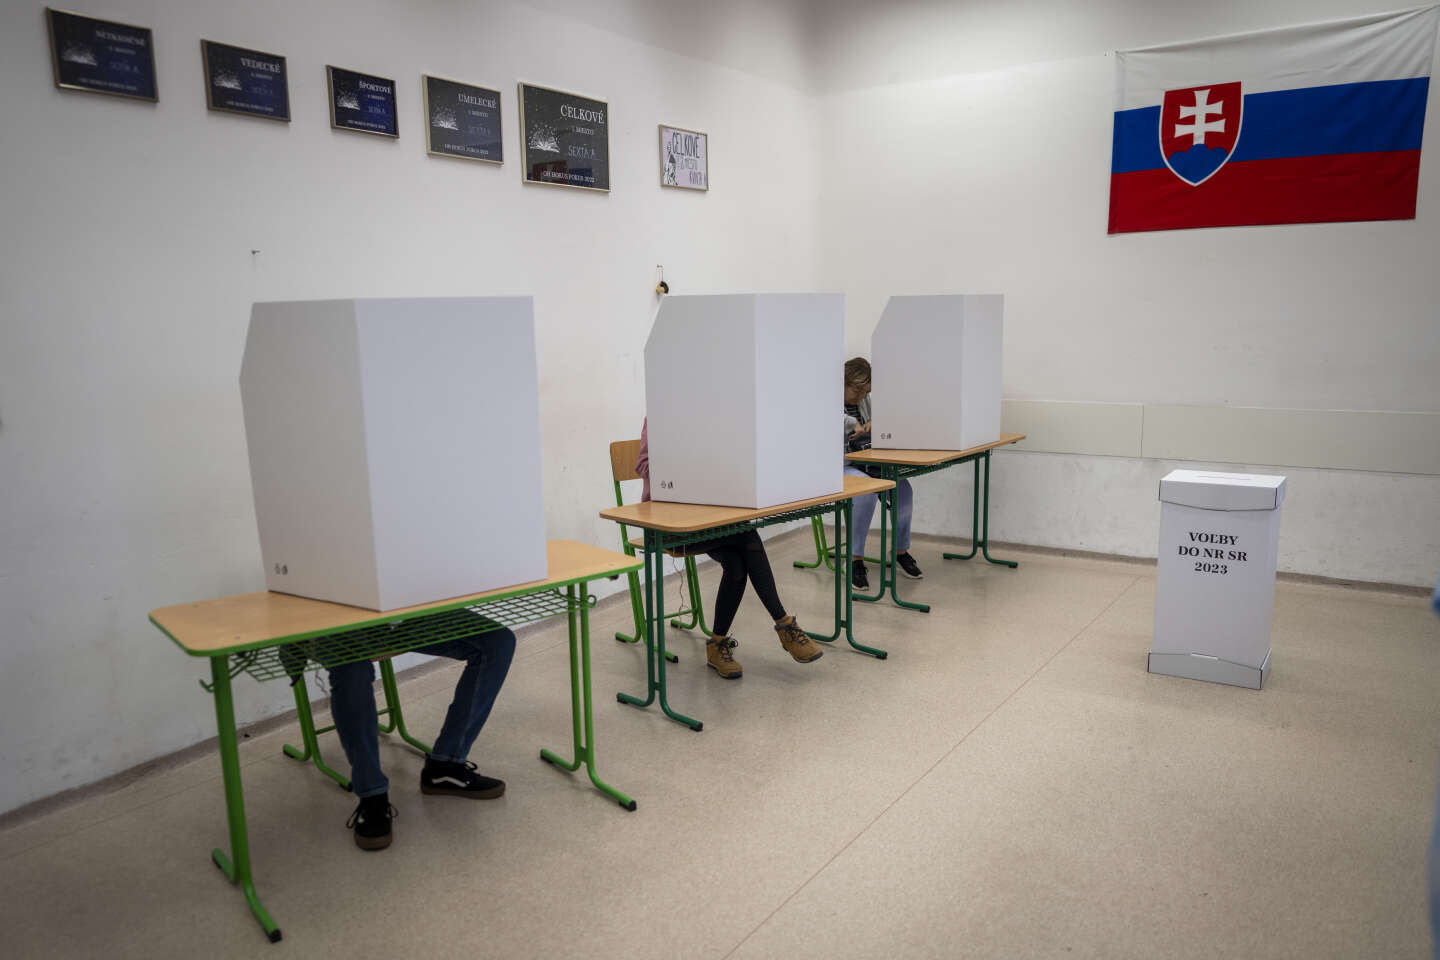 Les élections en Slovaquie, premier test raté de la politique européenne de lutte contre la désinformation